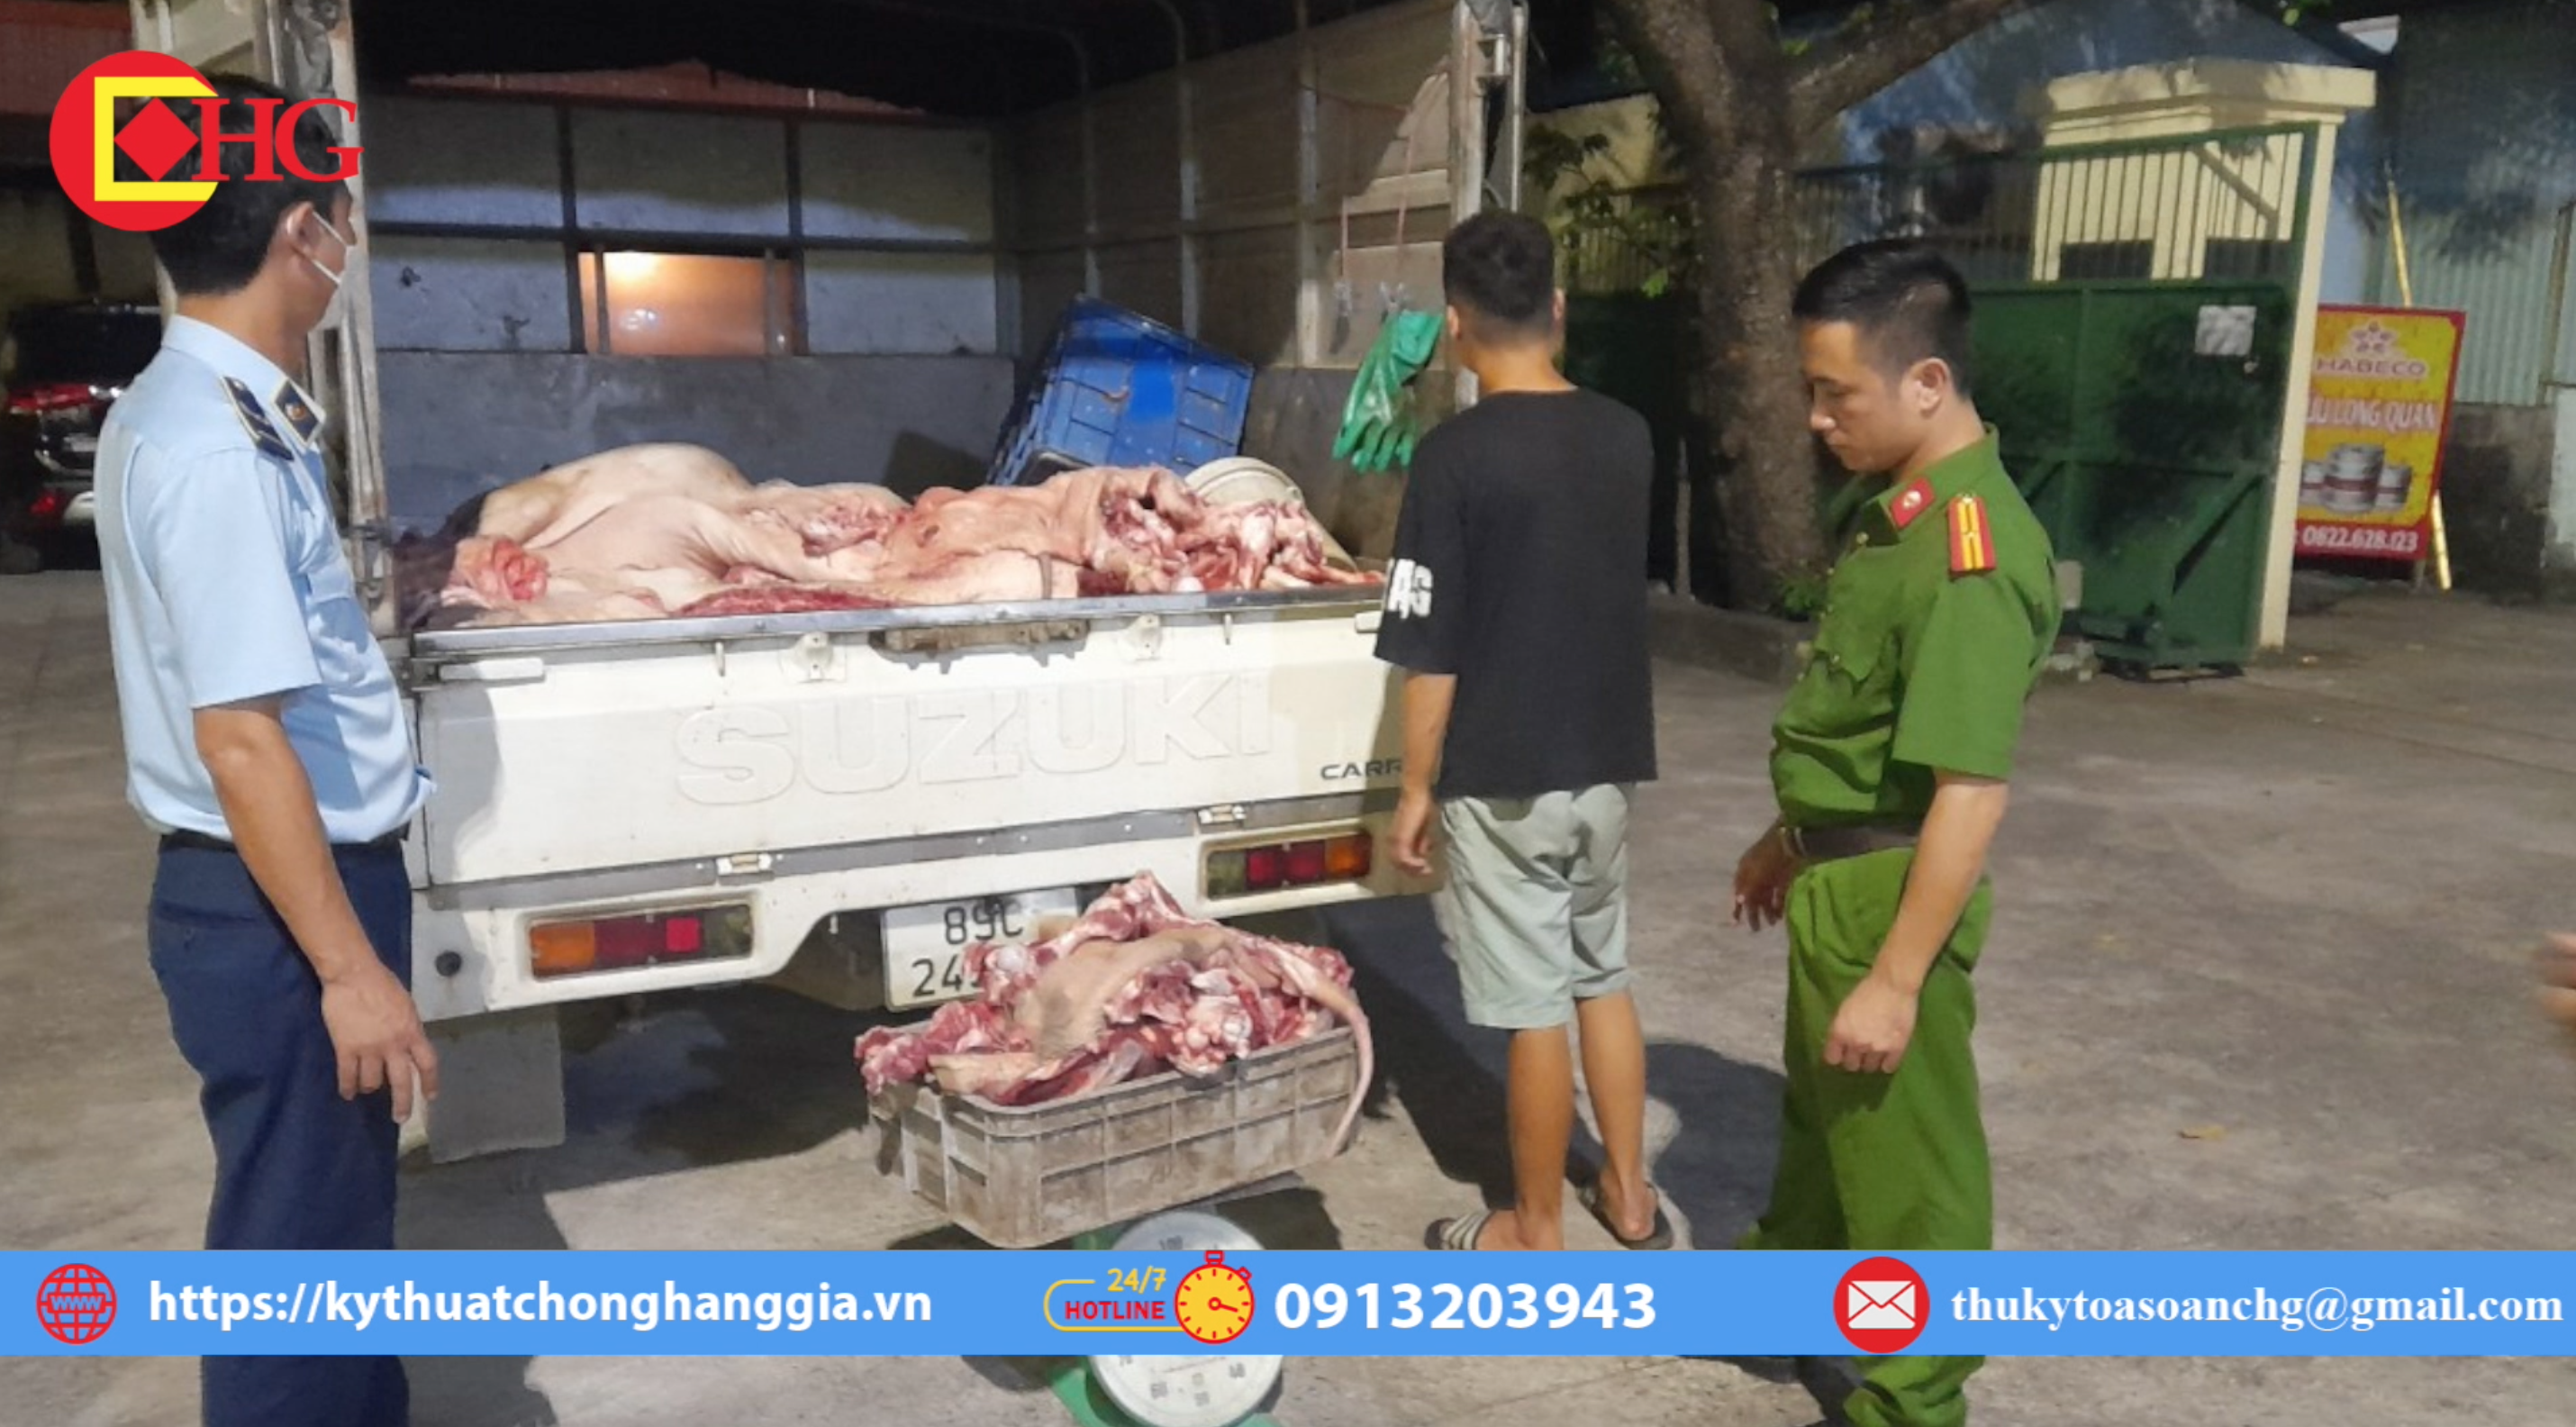 Hưng Yên: Ngăn chặn kịp thời gần 1,4 tấn thịt lợn không đảm bảo an toàn thực phẩm